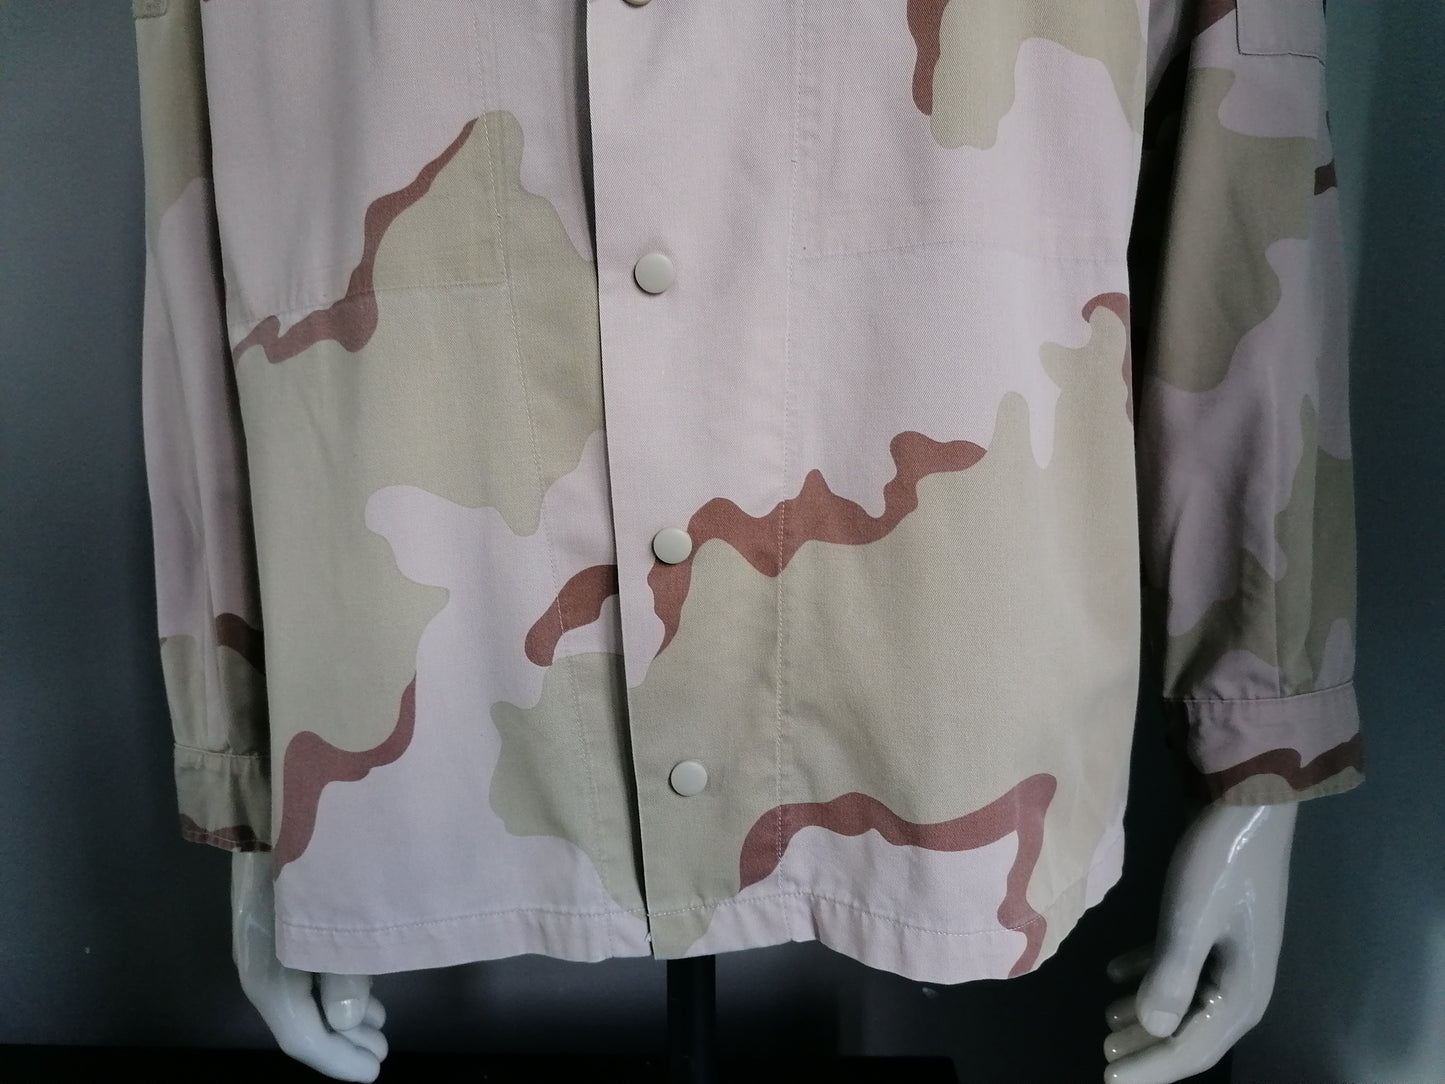 Camisa del ejército / ejército de la vendimia (2004). Impresión de camuflaje del desierto. Tamaño XL. Original